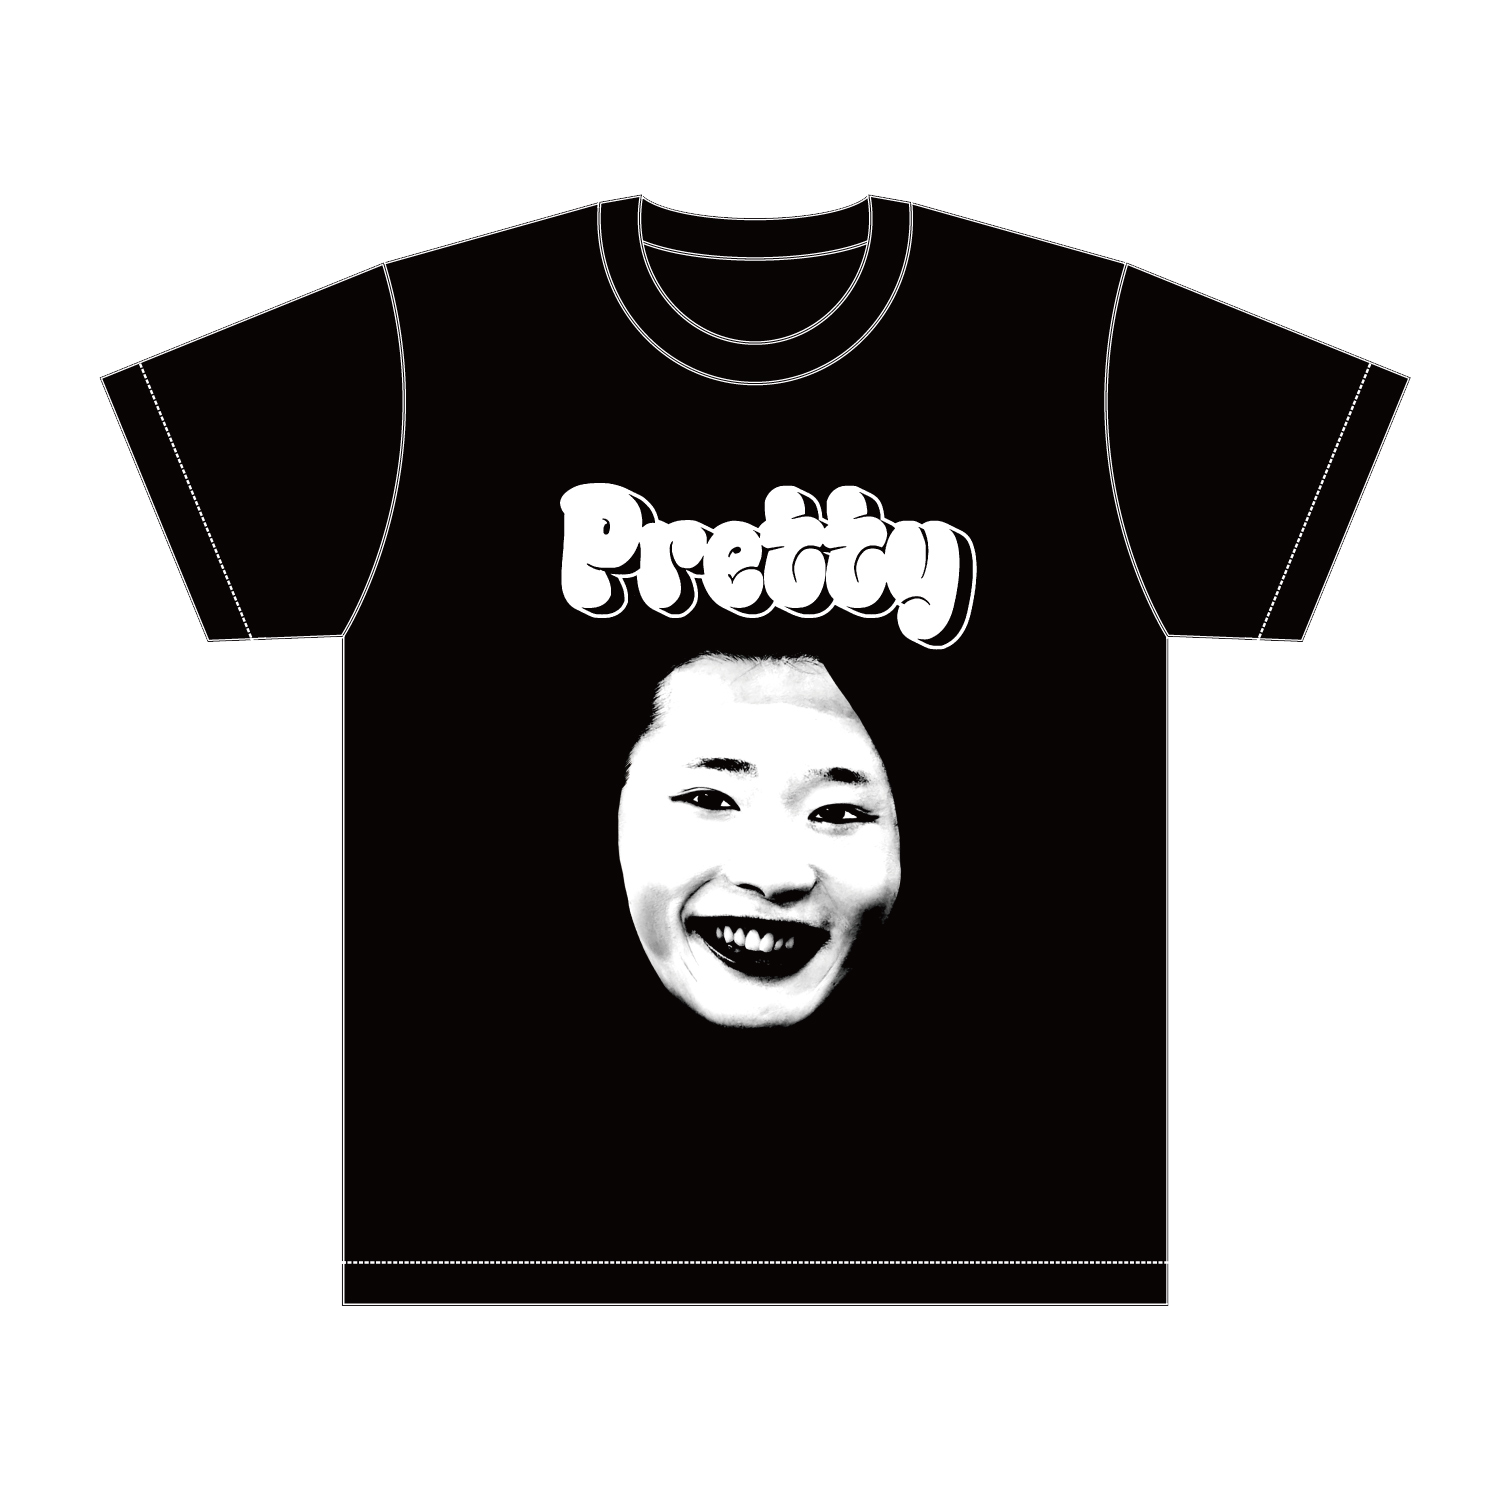 【受注販売】【マイコちゃん】PrettyTシャツ